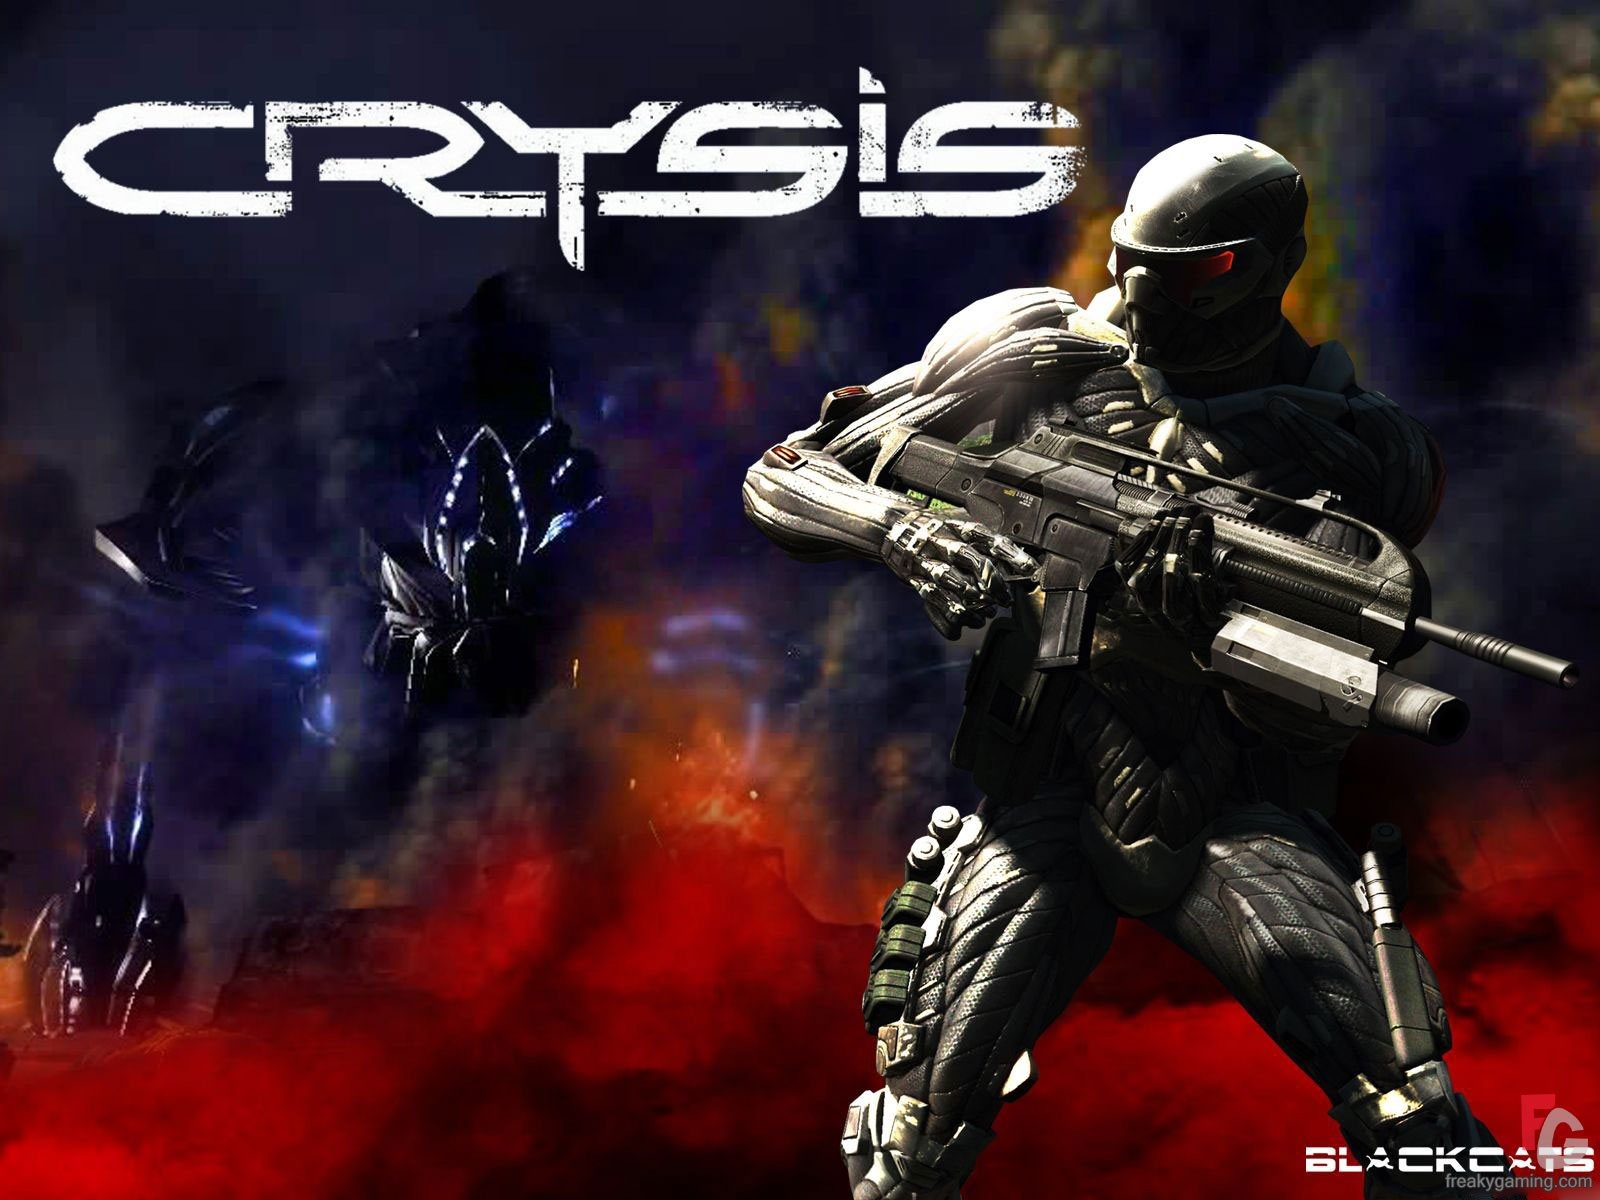  Crysisの壁紙(2) #6 - 1600x1200